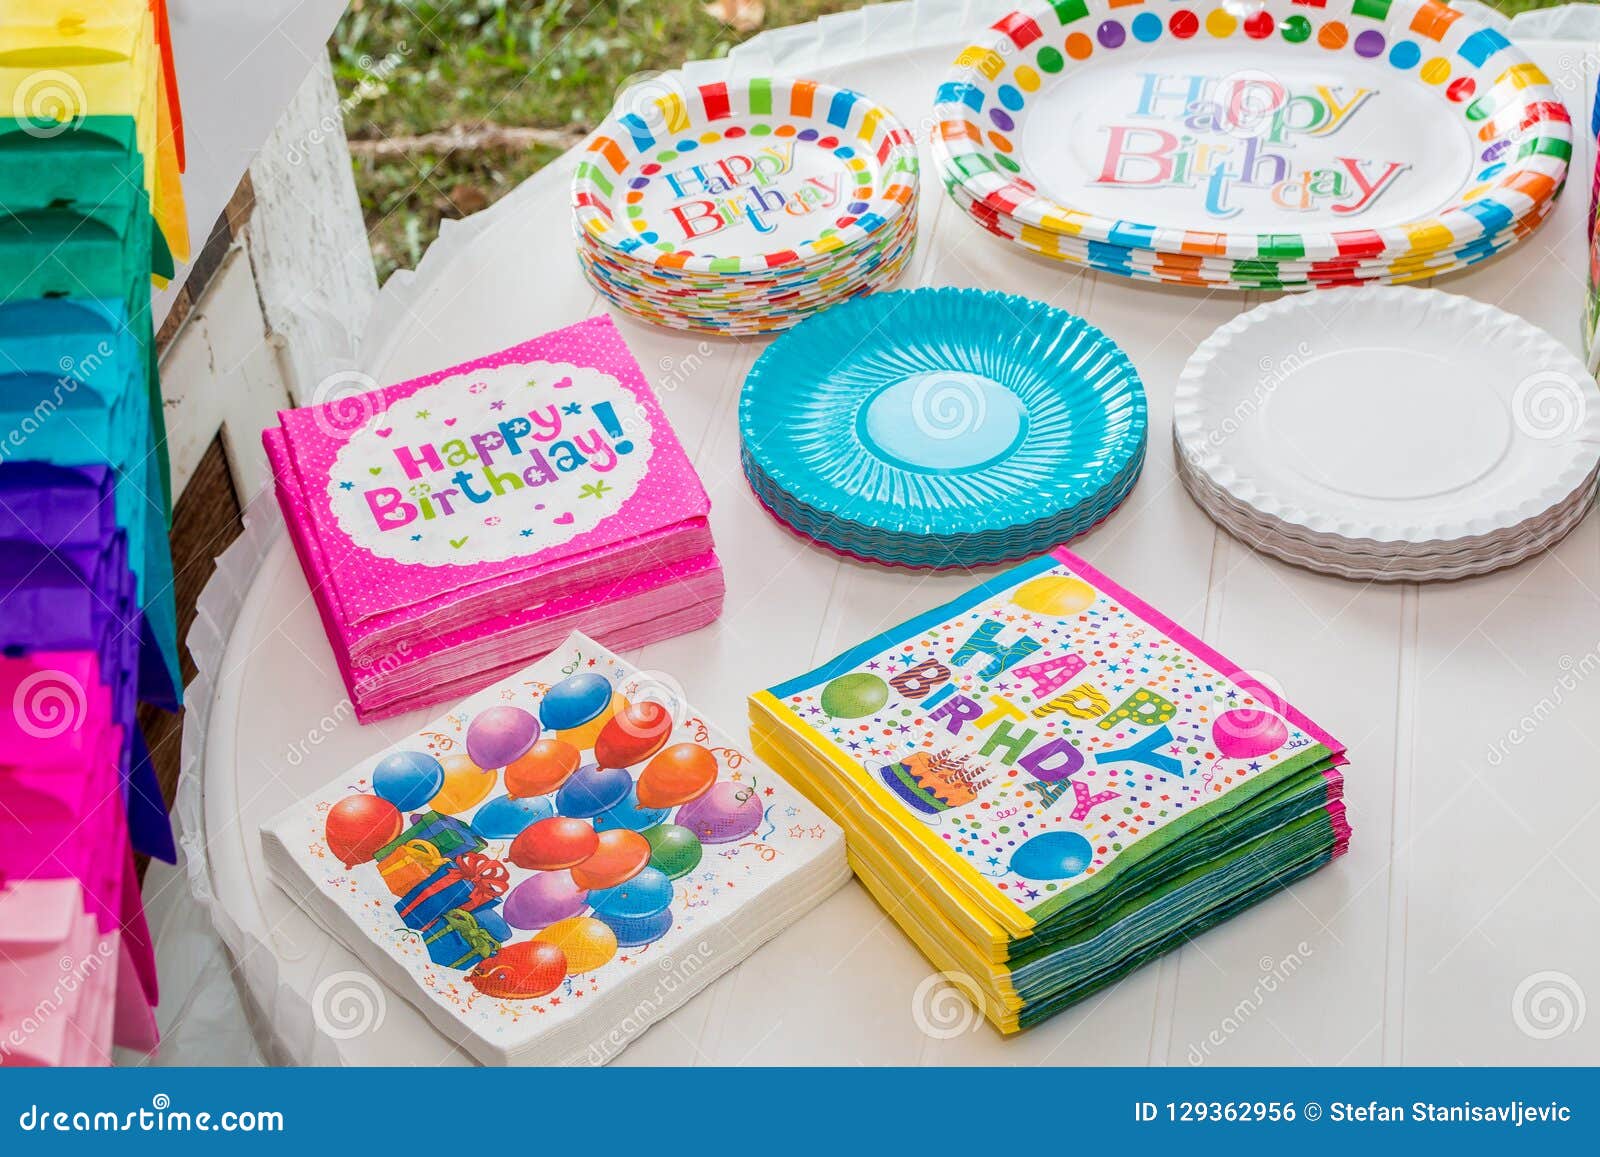 Table D'anniversaire Servie Avec La Vaisselle Jetable Photo stock - Image  du heureux, papier: 129362956